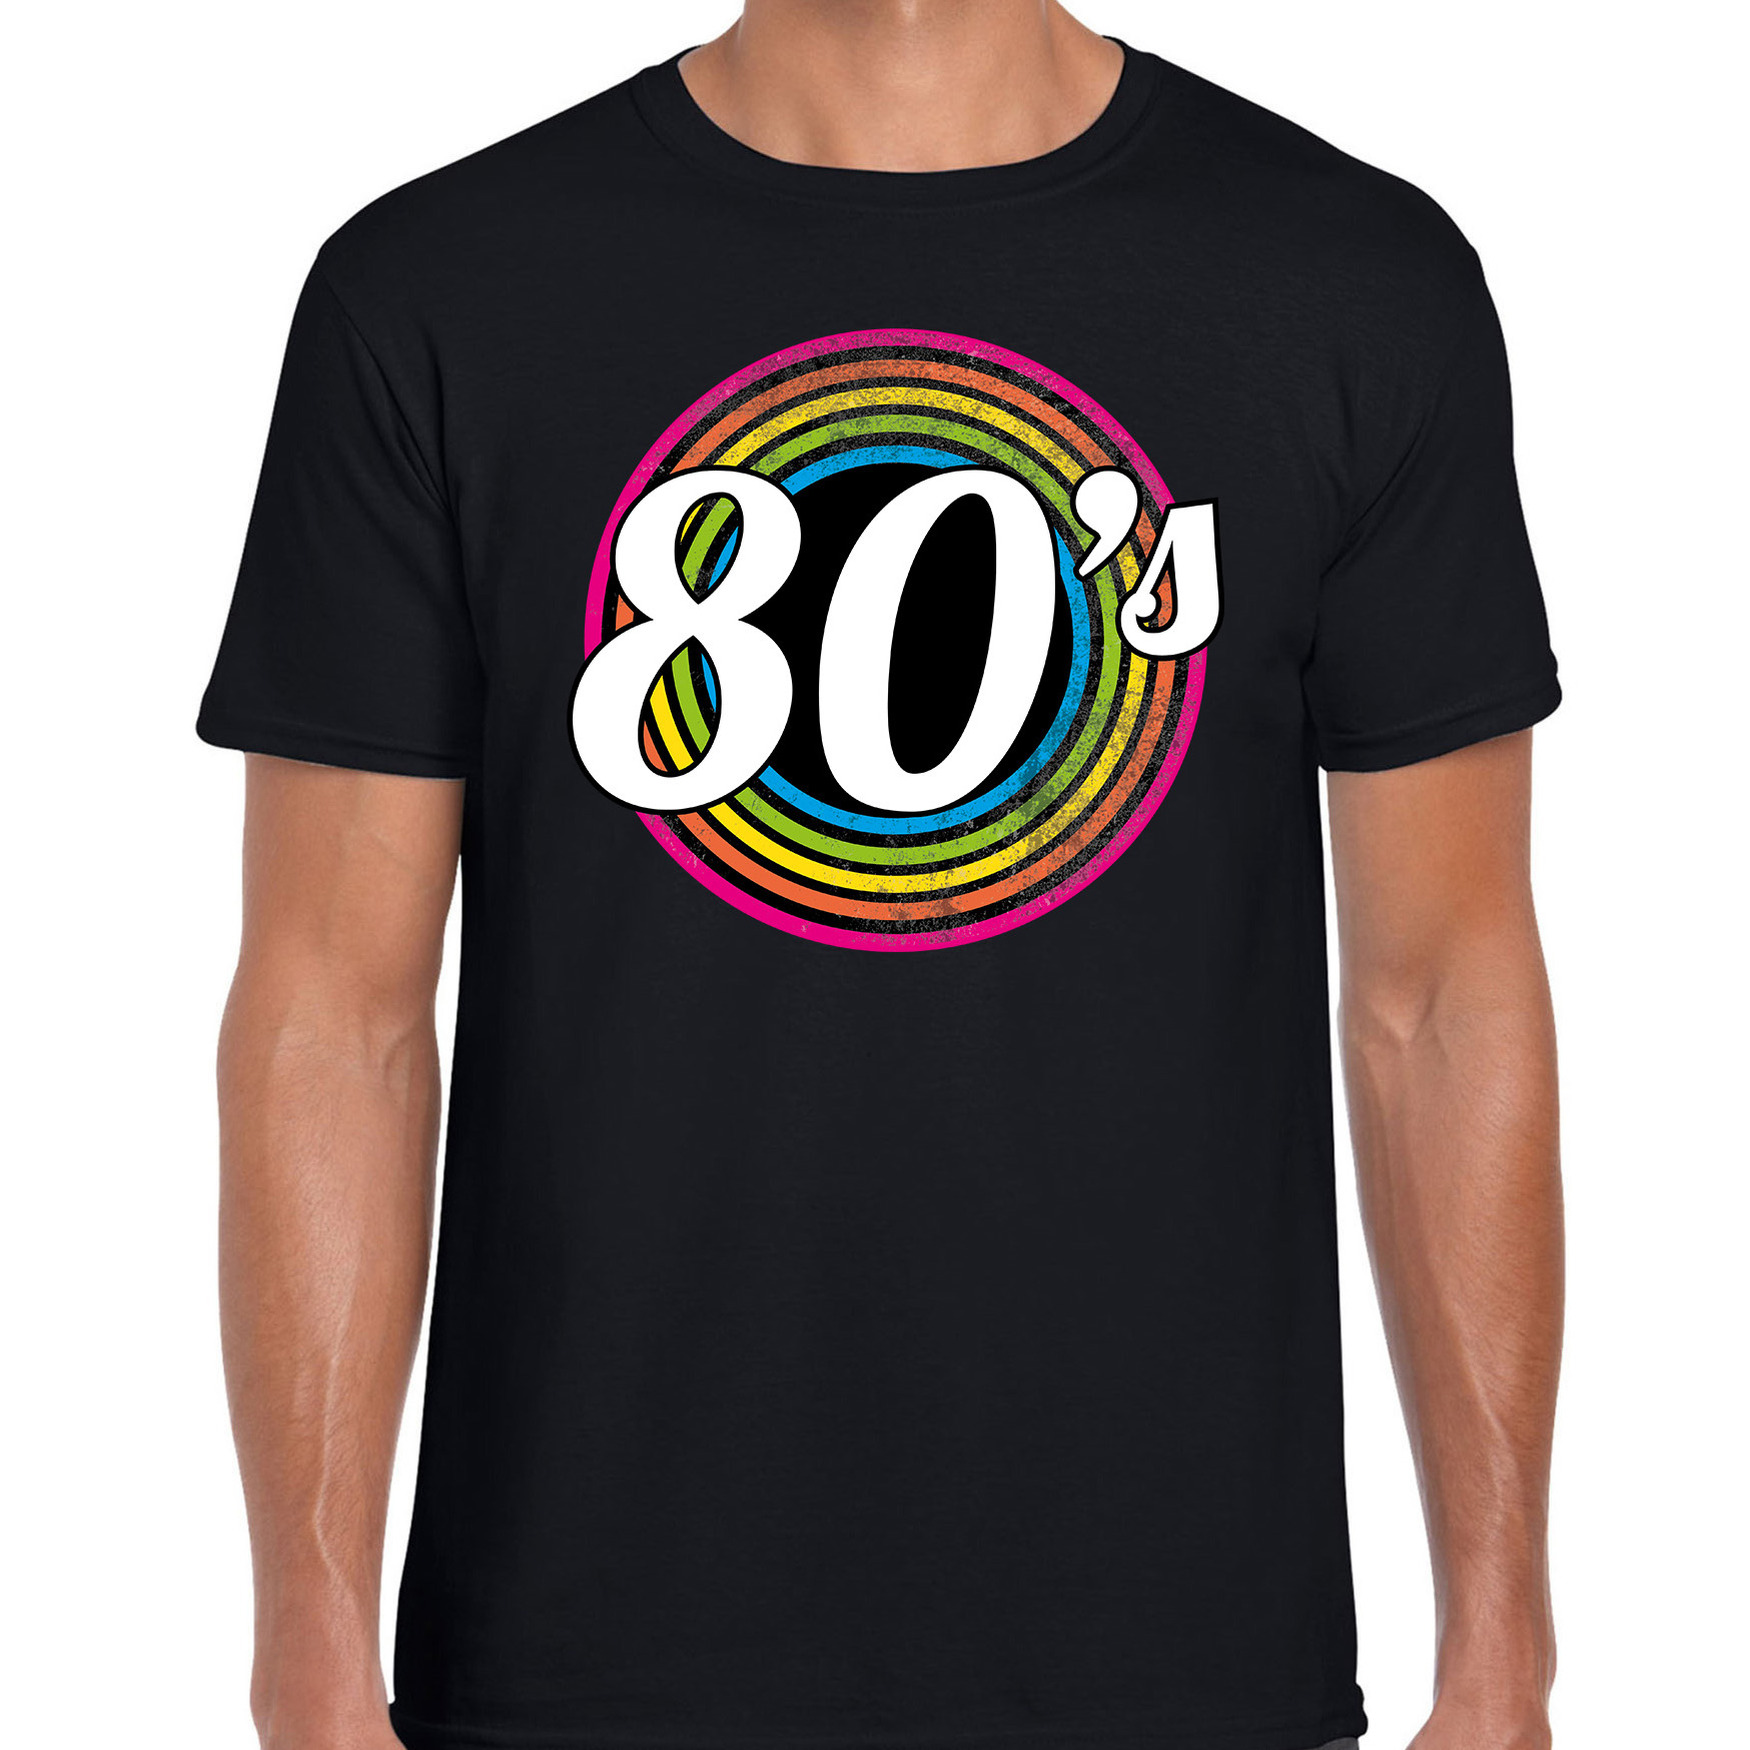 80s / eighties verkleed t-shirt zwart voor heren - 70s, 80s party verkleed outfit